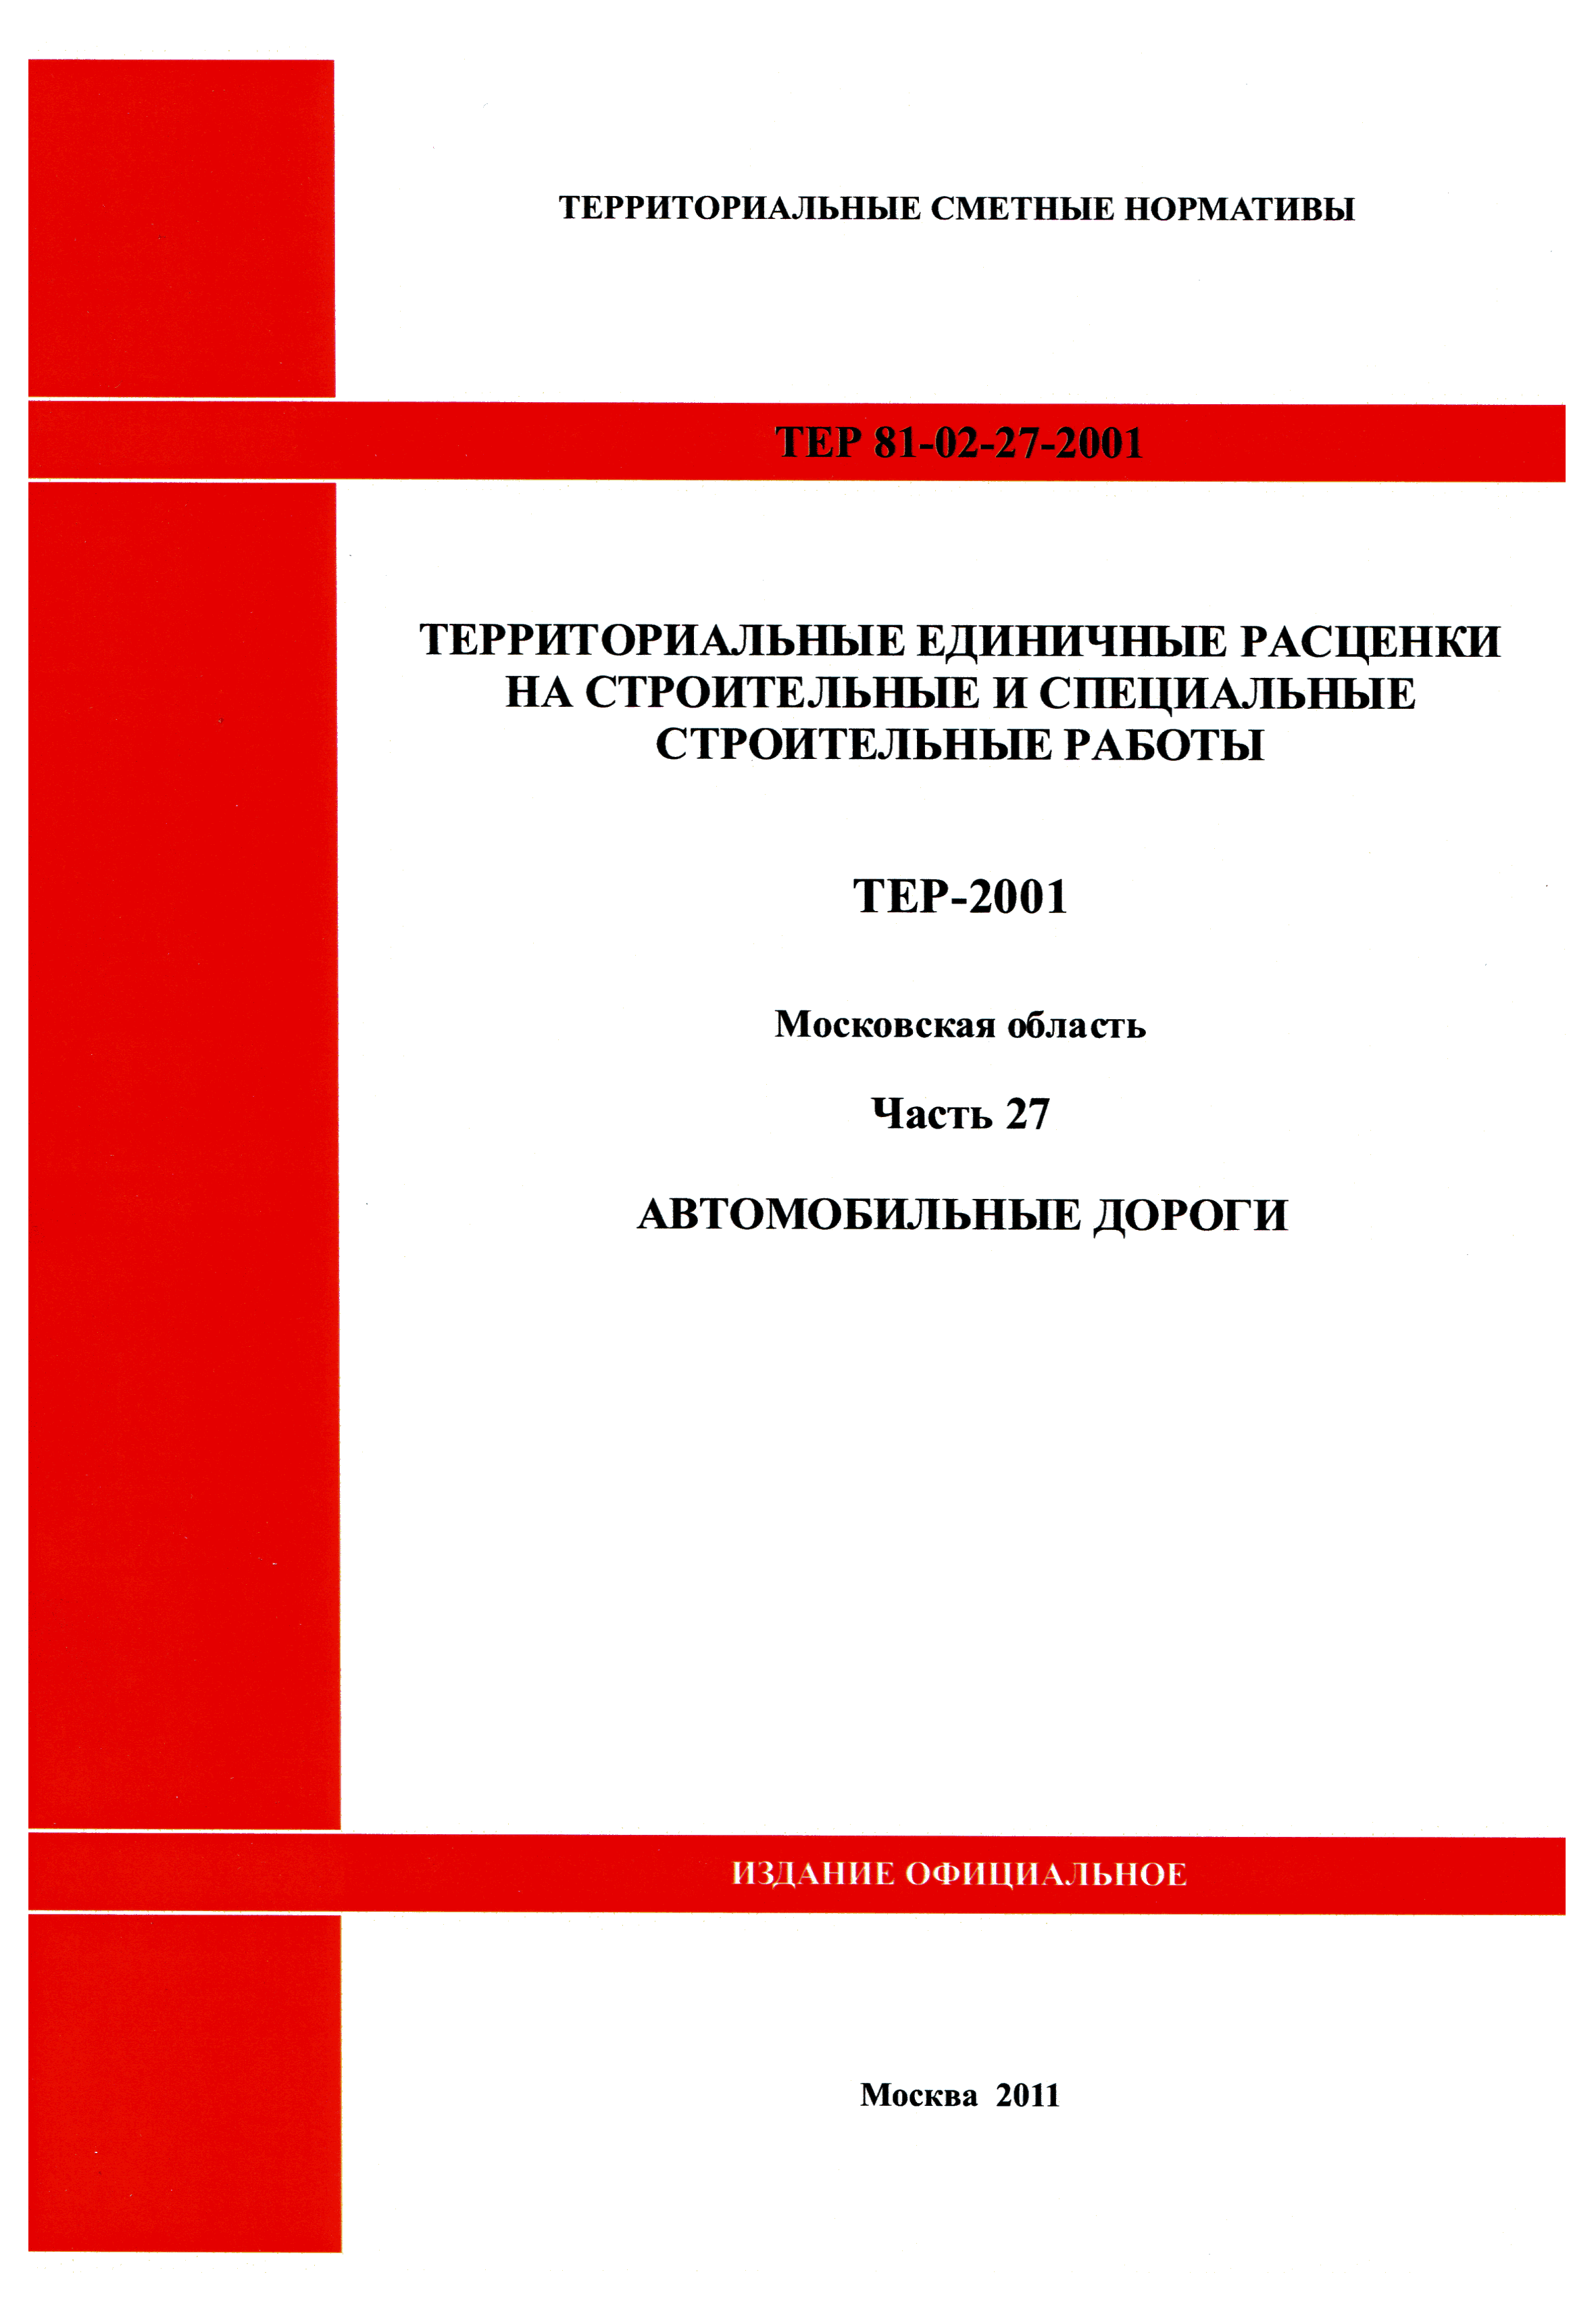 ТЕР 27-2001 Московской области